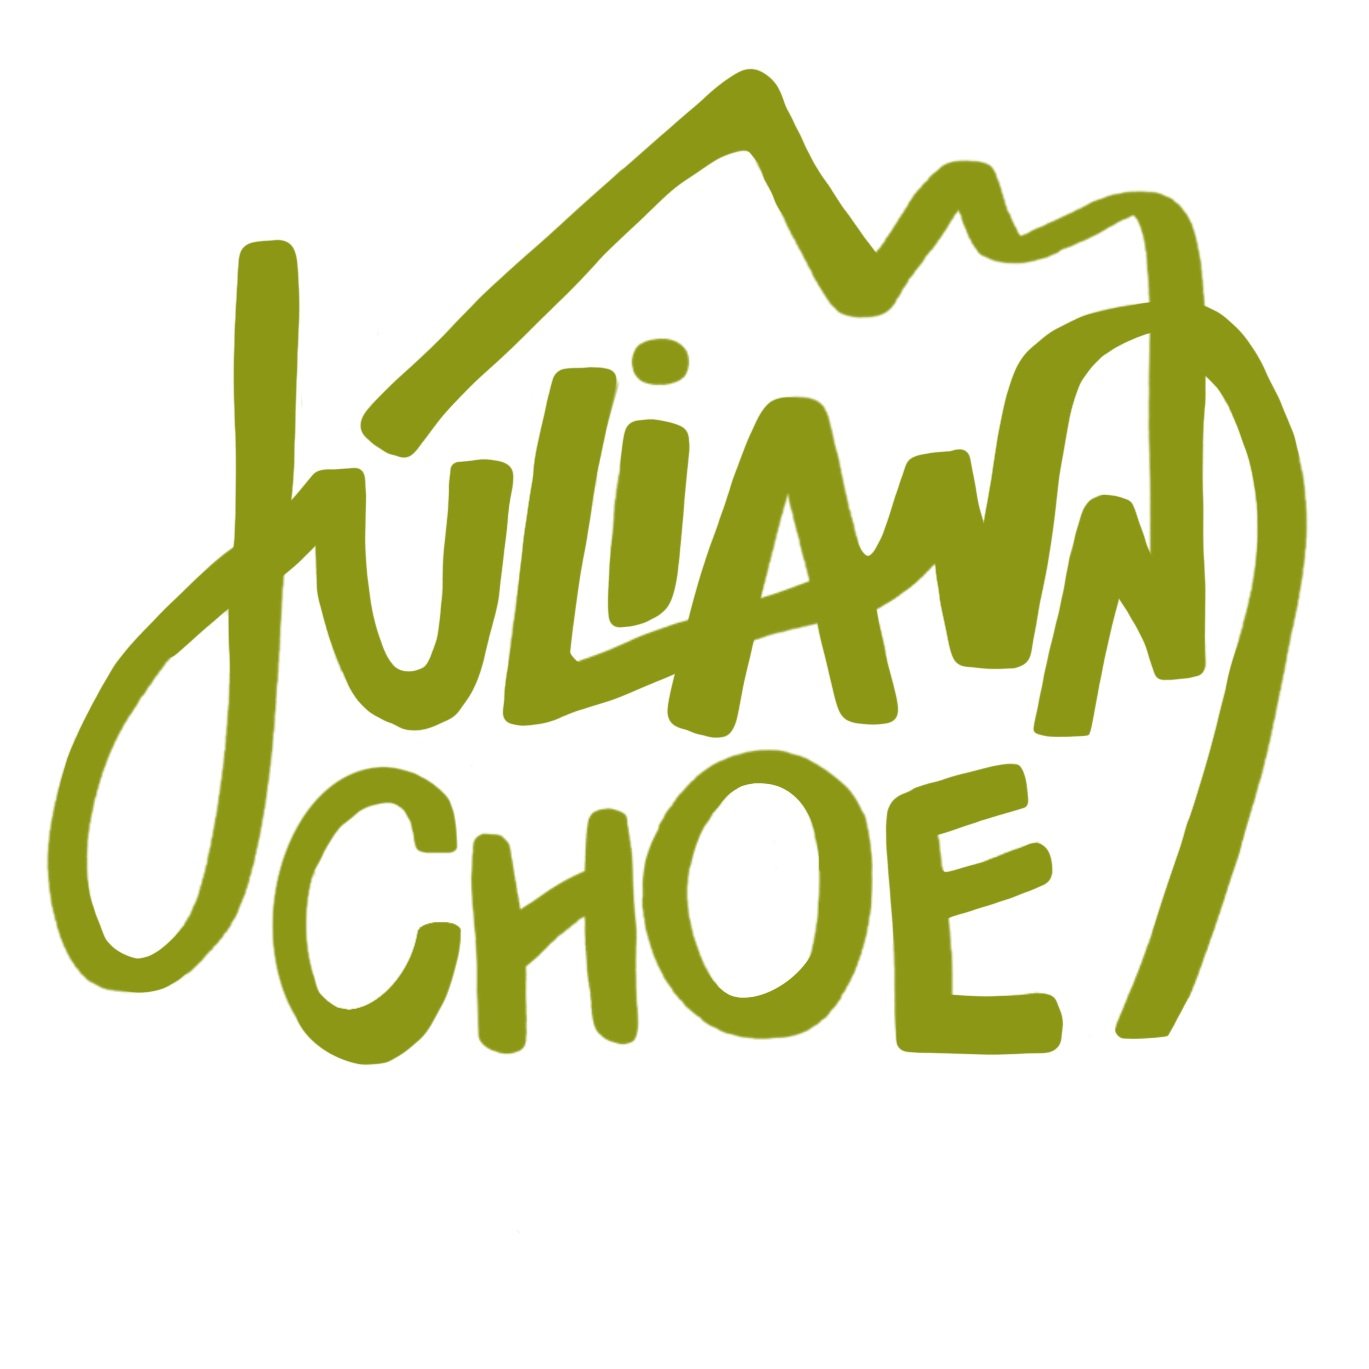 Juliann Choe